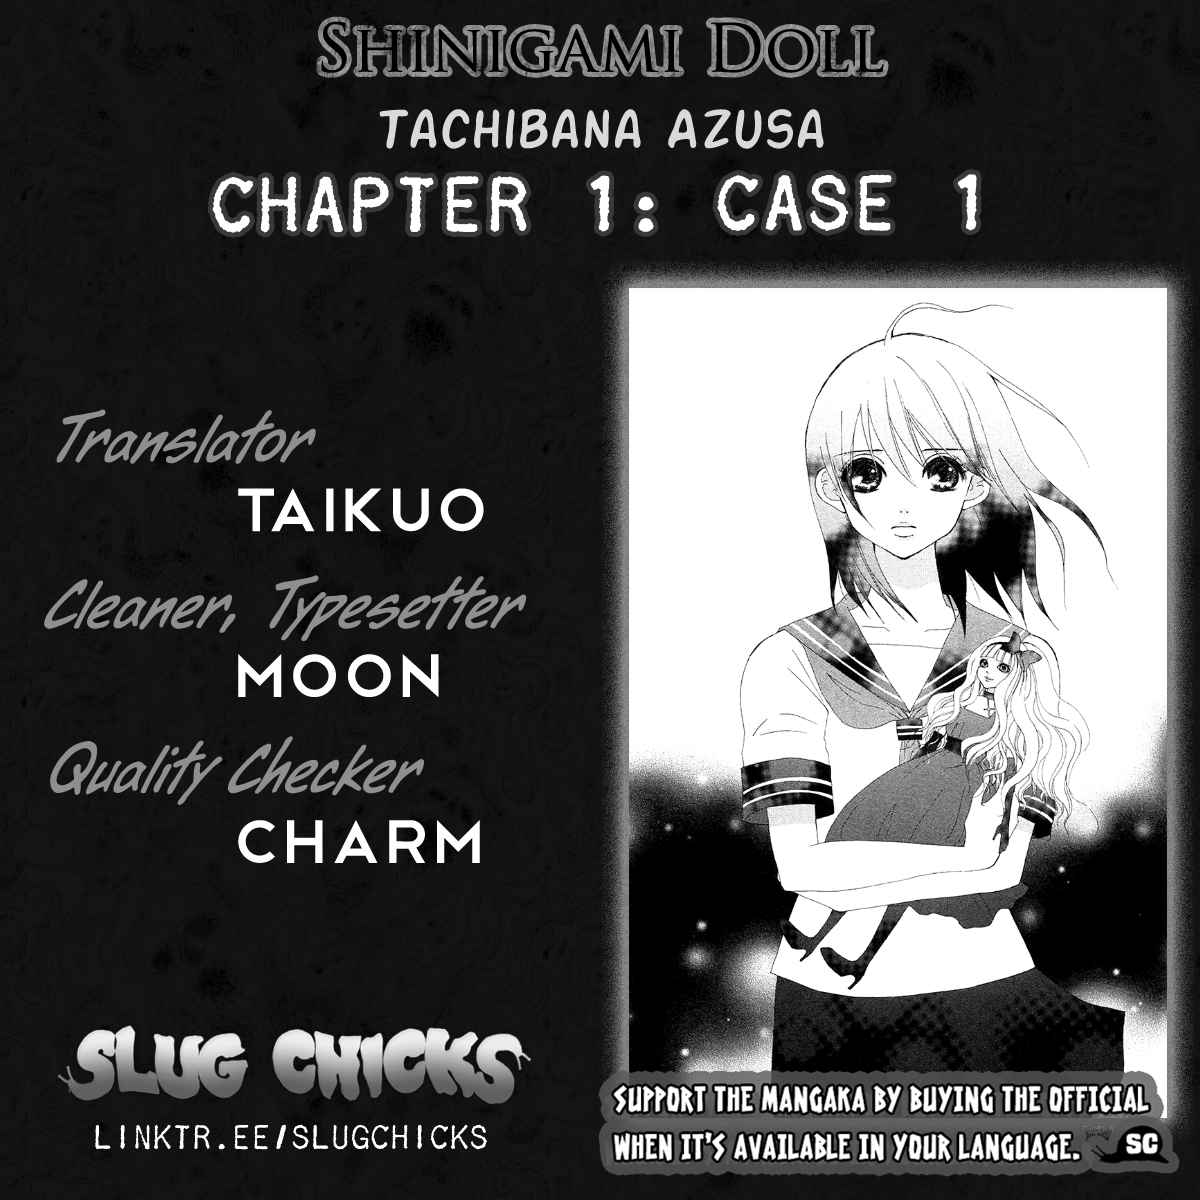 Shinigami Doll Vol. 1 Ch. 1 Case 1